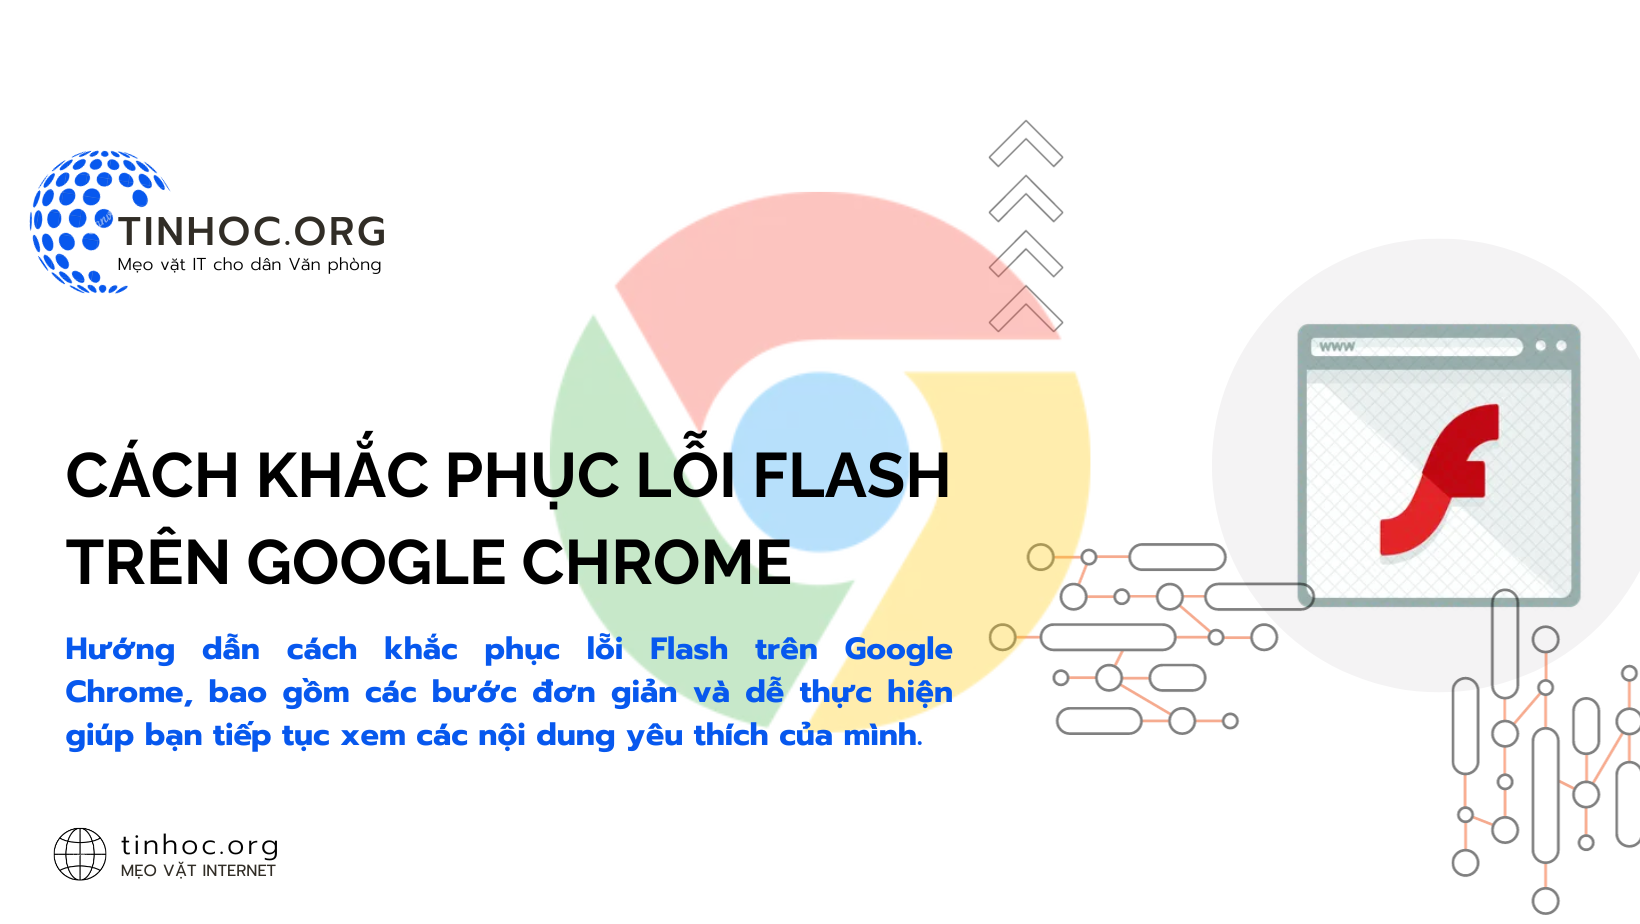 Hướng dẫn cách khắc phục lỗi Flash trên Google Chrome, bao gồm các bước đơn giản và dễ thực hiện giúp bạn tiếp tục xem các nội dung yêu thích của mình.